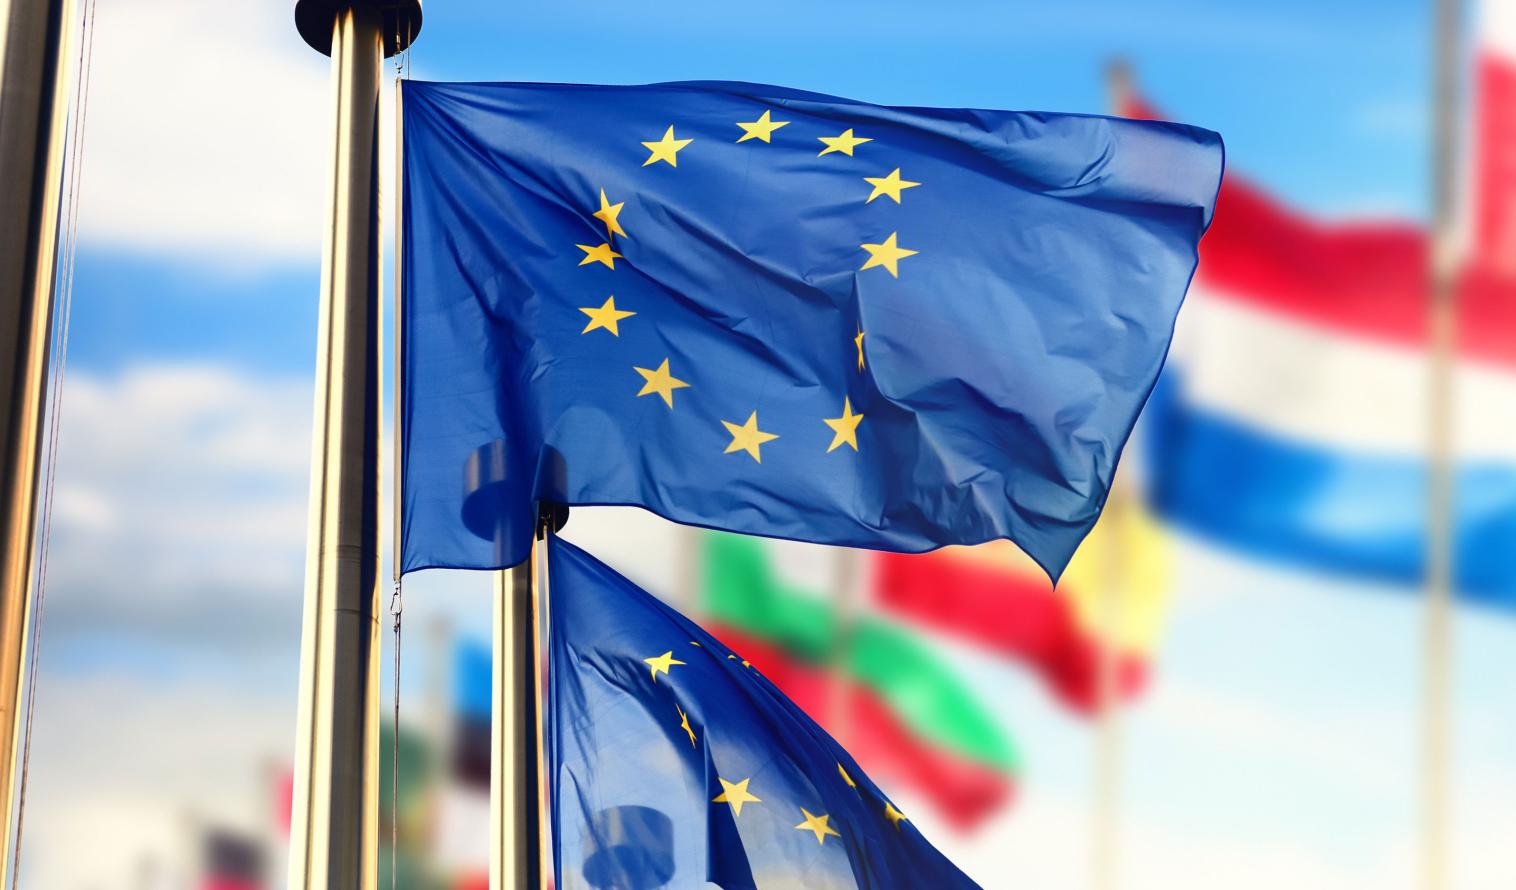 EU-Flaggen wehen vor blauem Himmel. Weitere Flaggen sind im Hintergrund zu sehen.